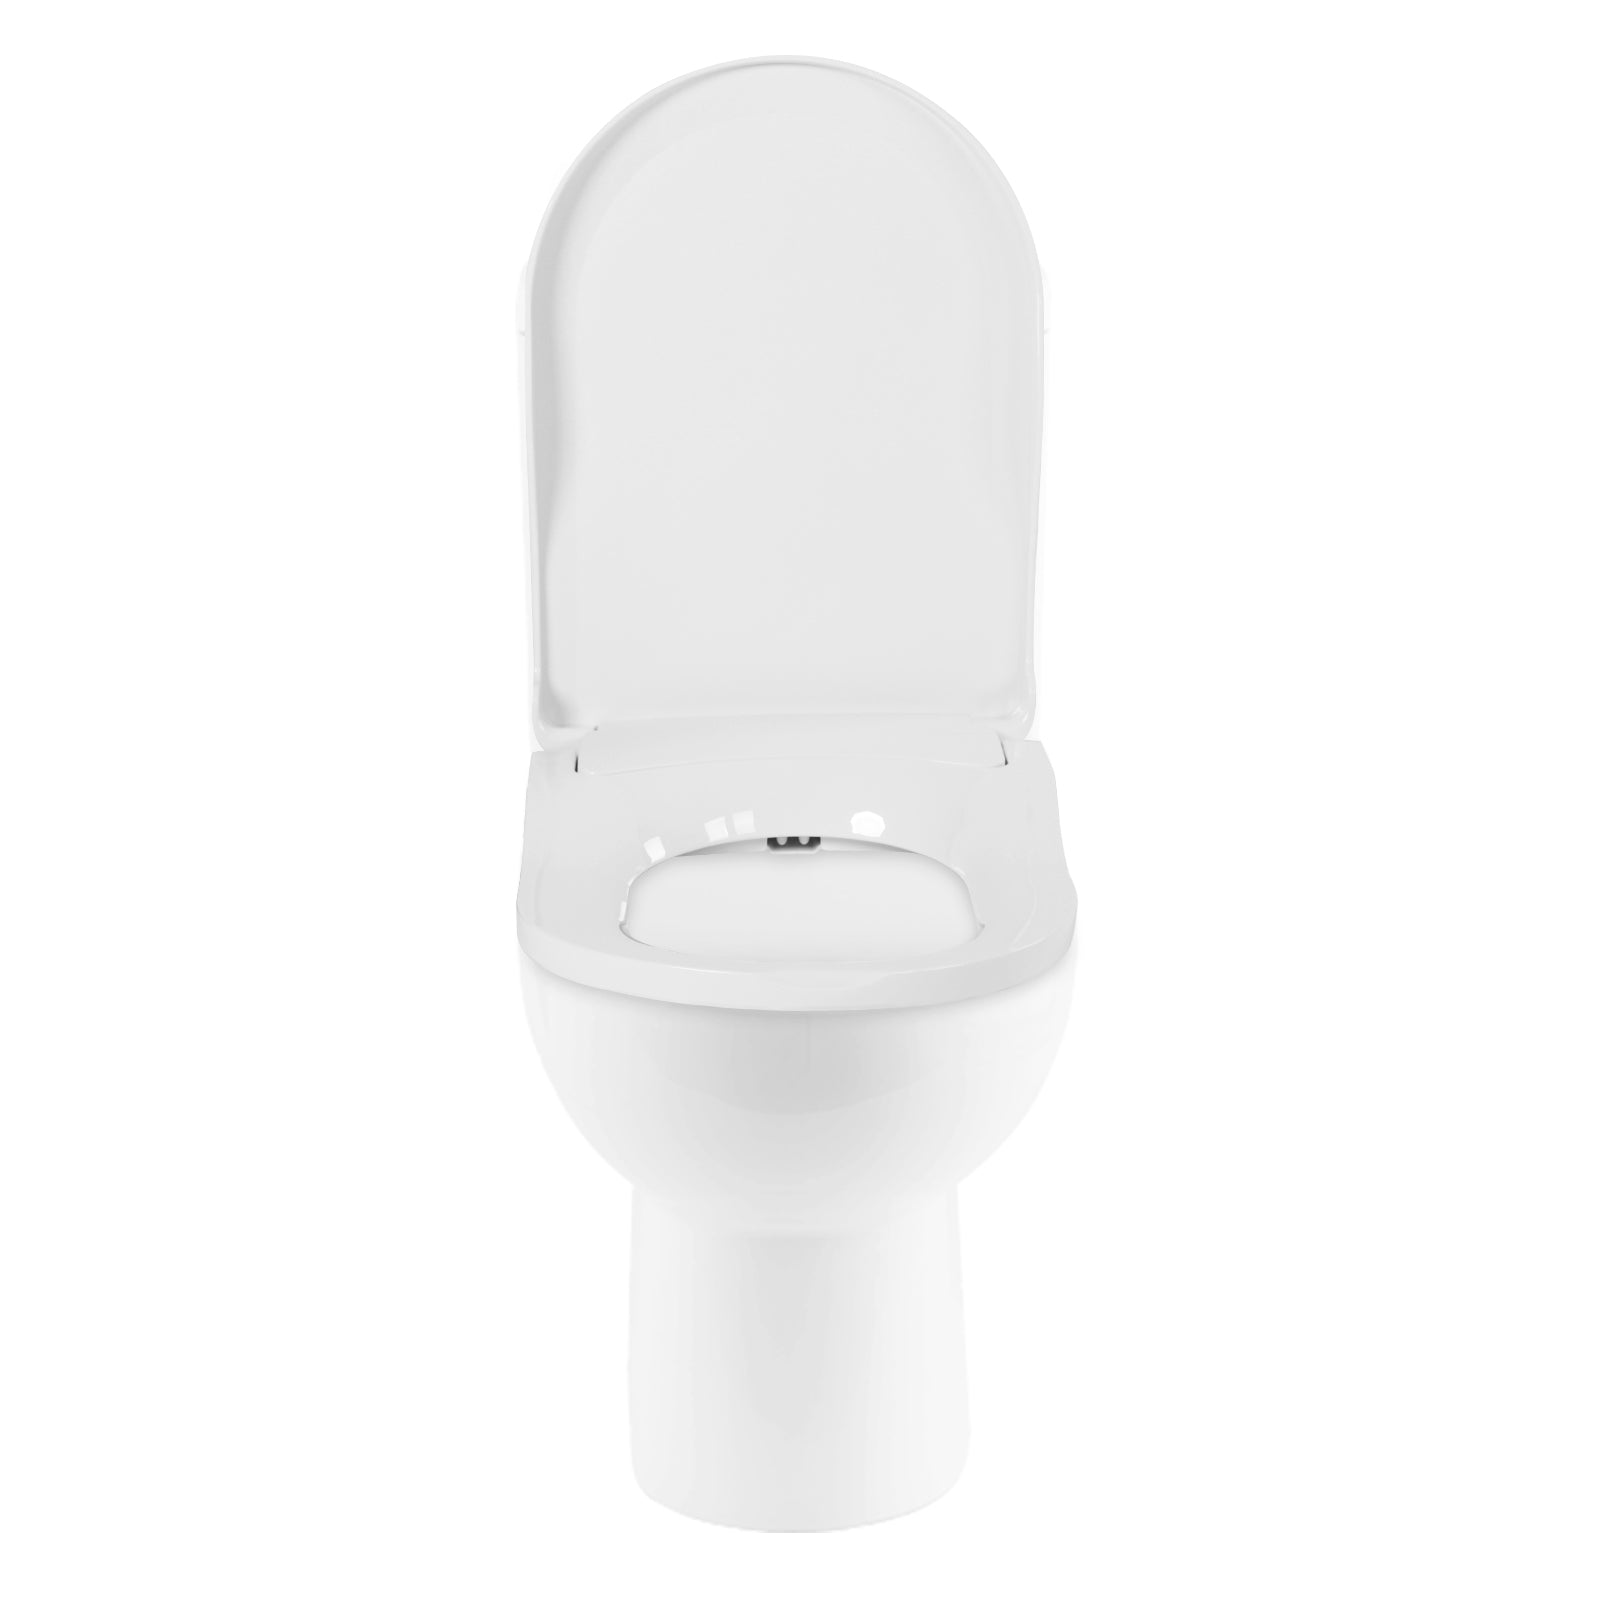 Sedile wc non elettrico con bidet integrato con getto d'acqua dolce, doppi ugelli, igienico, antibatterico, coperchio removibile